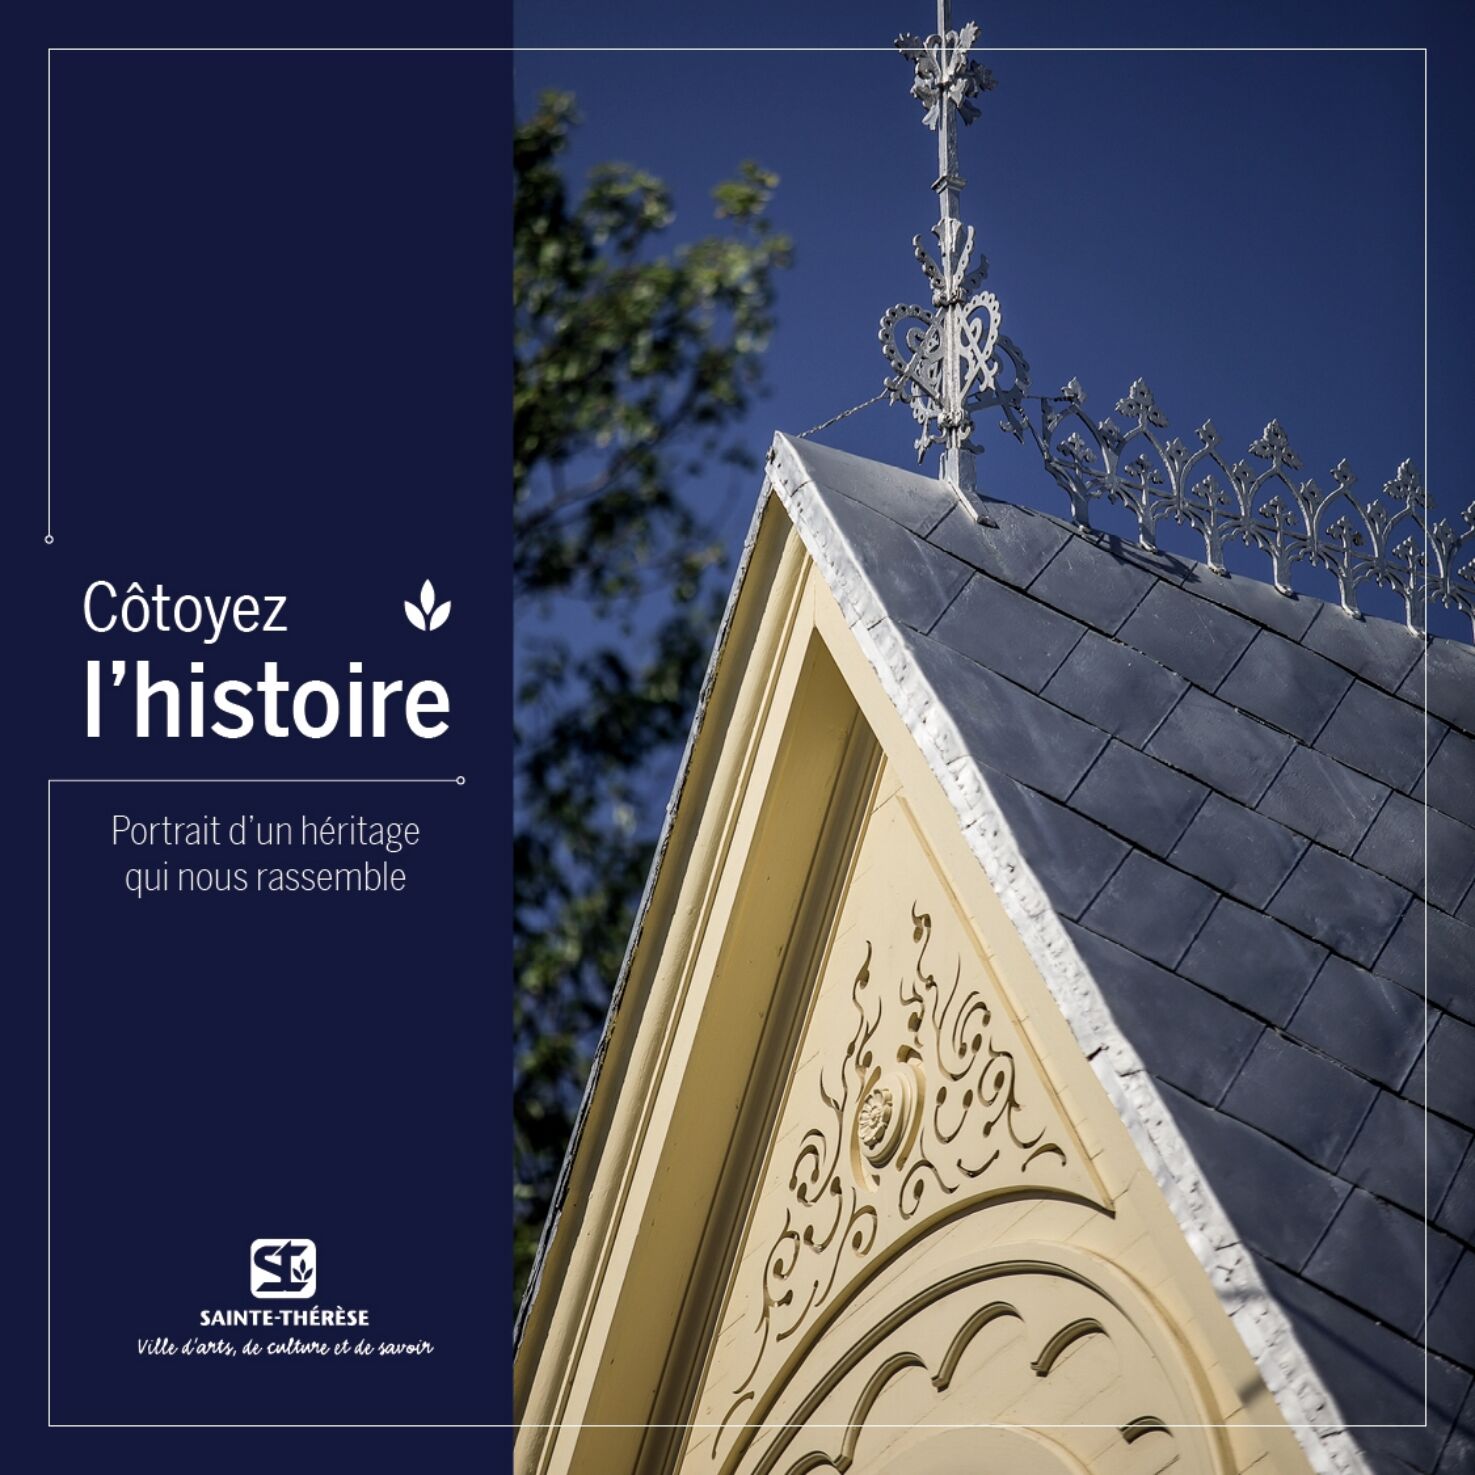 Sainte-Thérèse/Cotoyer l'histoire